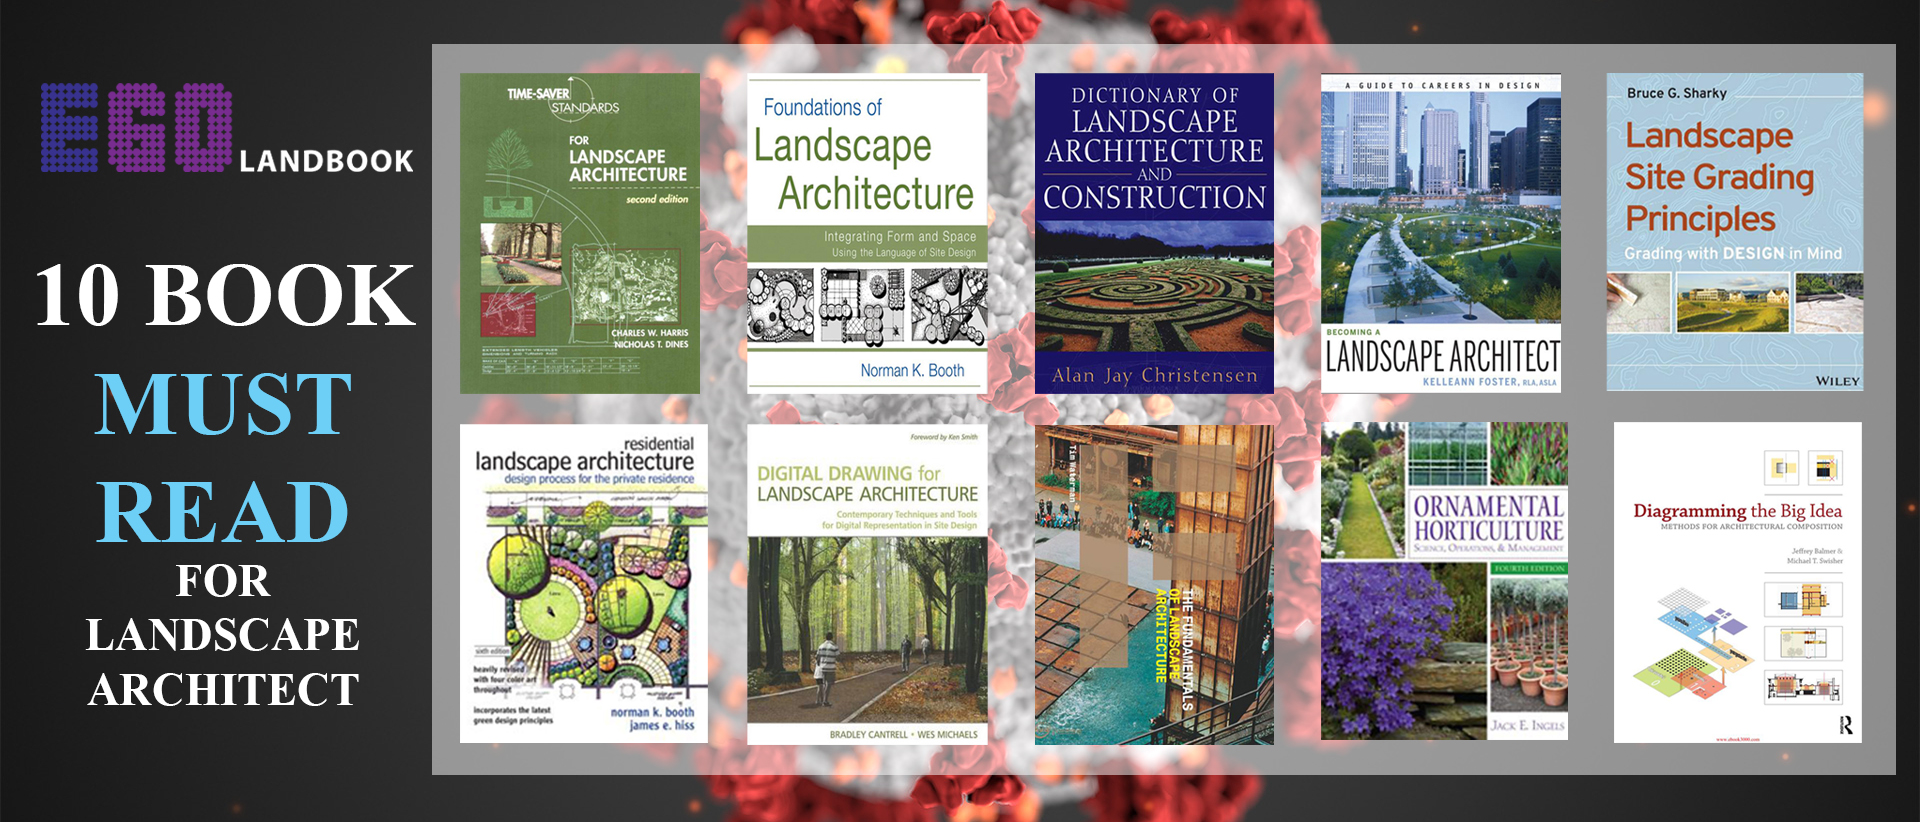 10 Books Must Read for Landscape Architect in Quarantine Covid-19